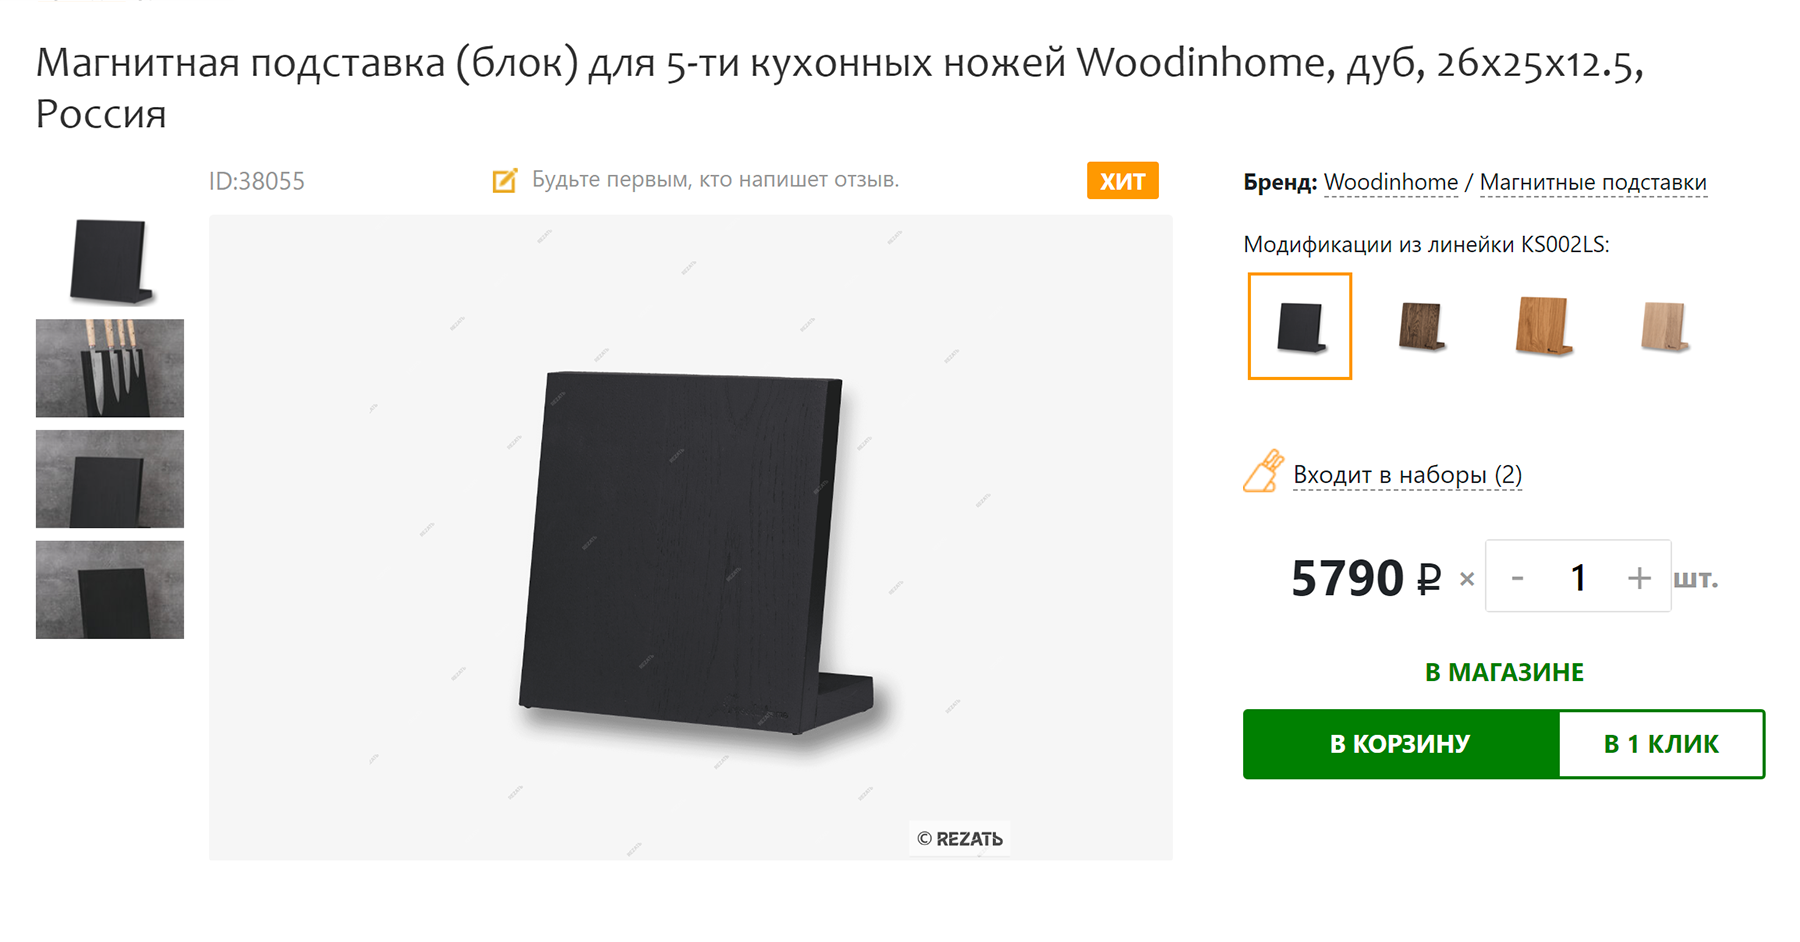 Такой держатель ставят на стол, он дороже — 5790 ₽. Источник: rezat.ru